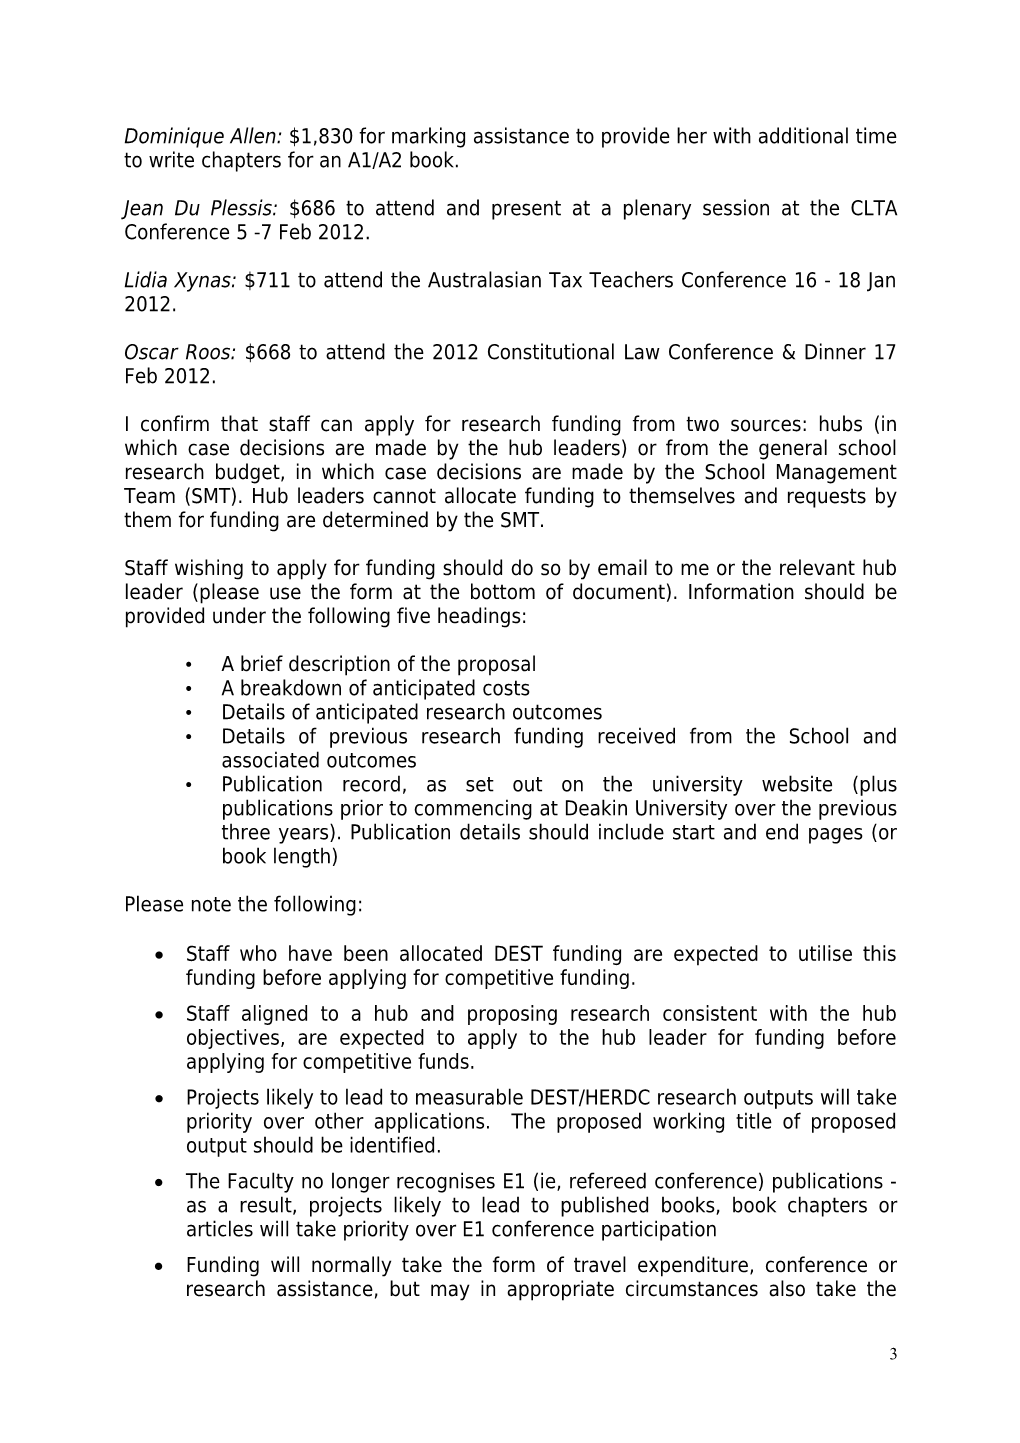 DEAKIN LAW SCHOOL RESEARCH REPORT (No 1 of 2012)